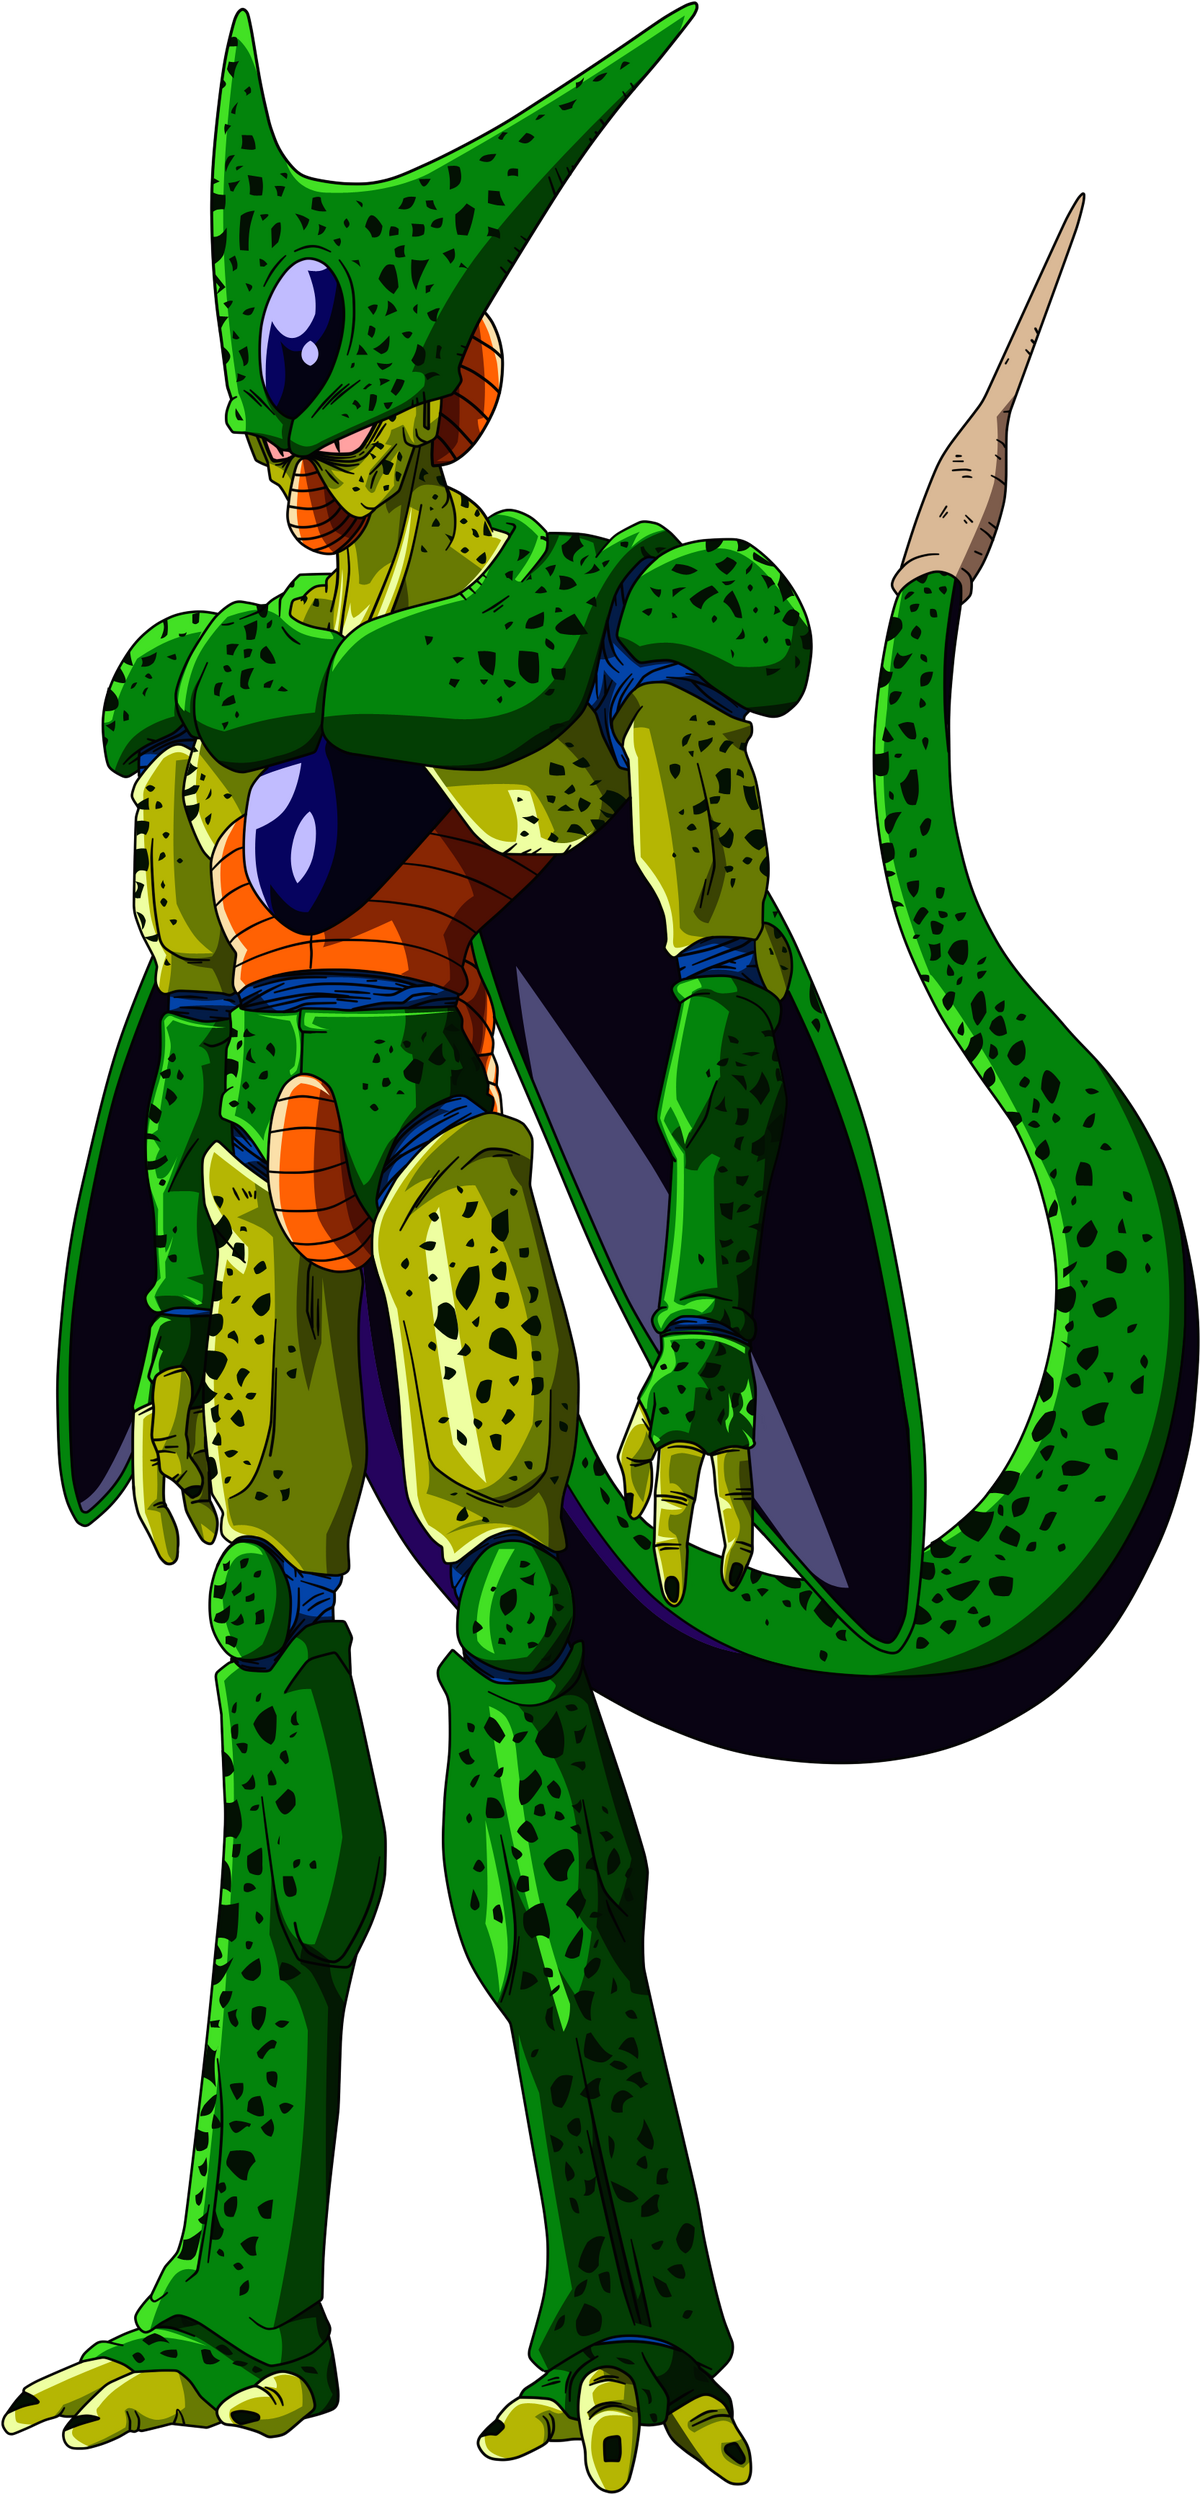 Cell DBZ, Desenho do personagem Cell de Dragon Ball Z., Mônica C.F